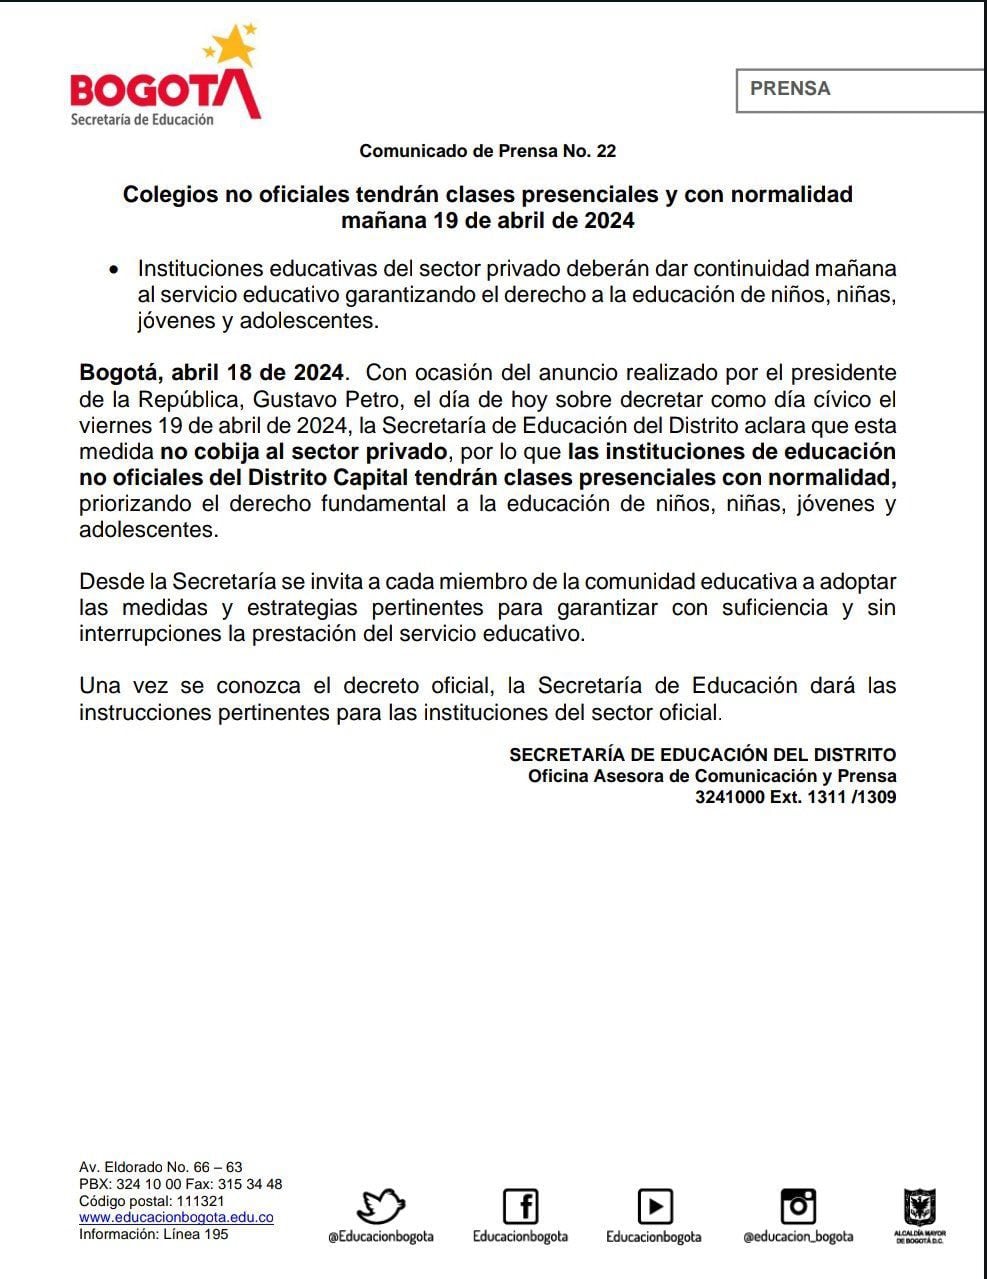 Los colegios privados de Bogotá sí tendrán clases este viernes 19 de abril, decretado día cívico.